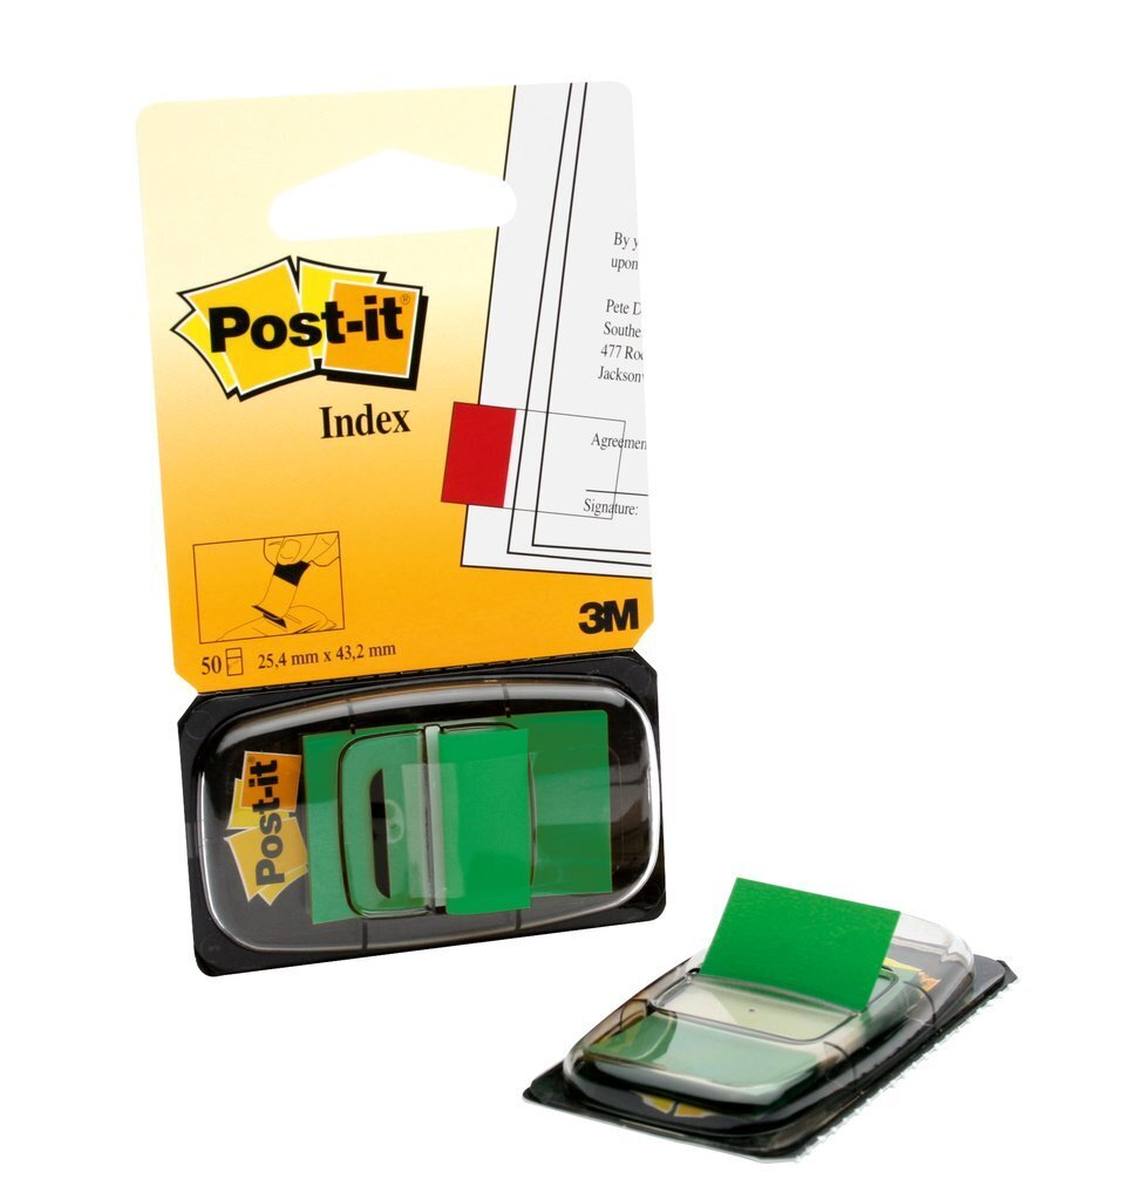 3M Post-it Index I680-3, 25,4 mm x 43,2 mm, verde, 1 x 50 tiras adhesivas en dispensador